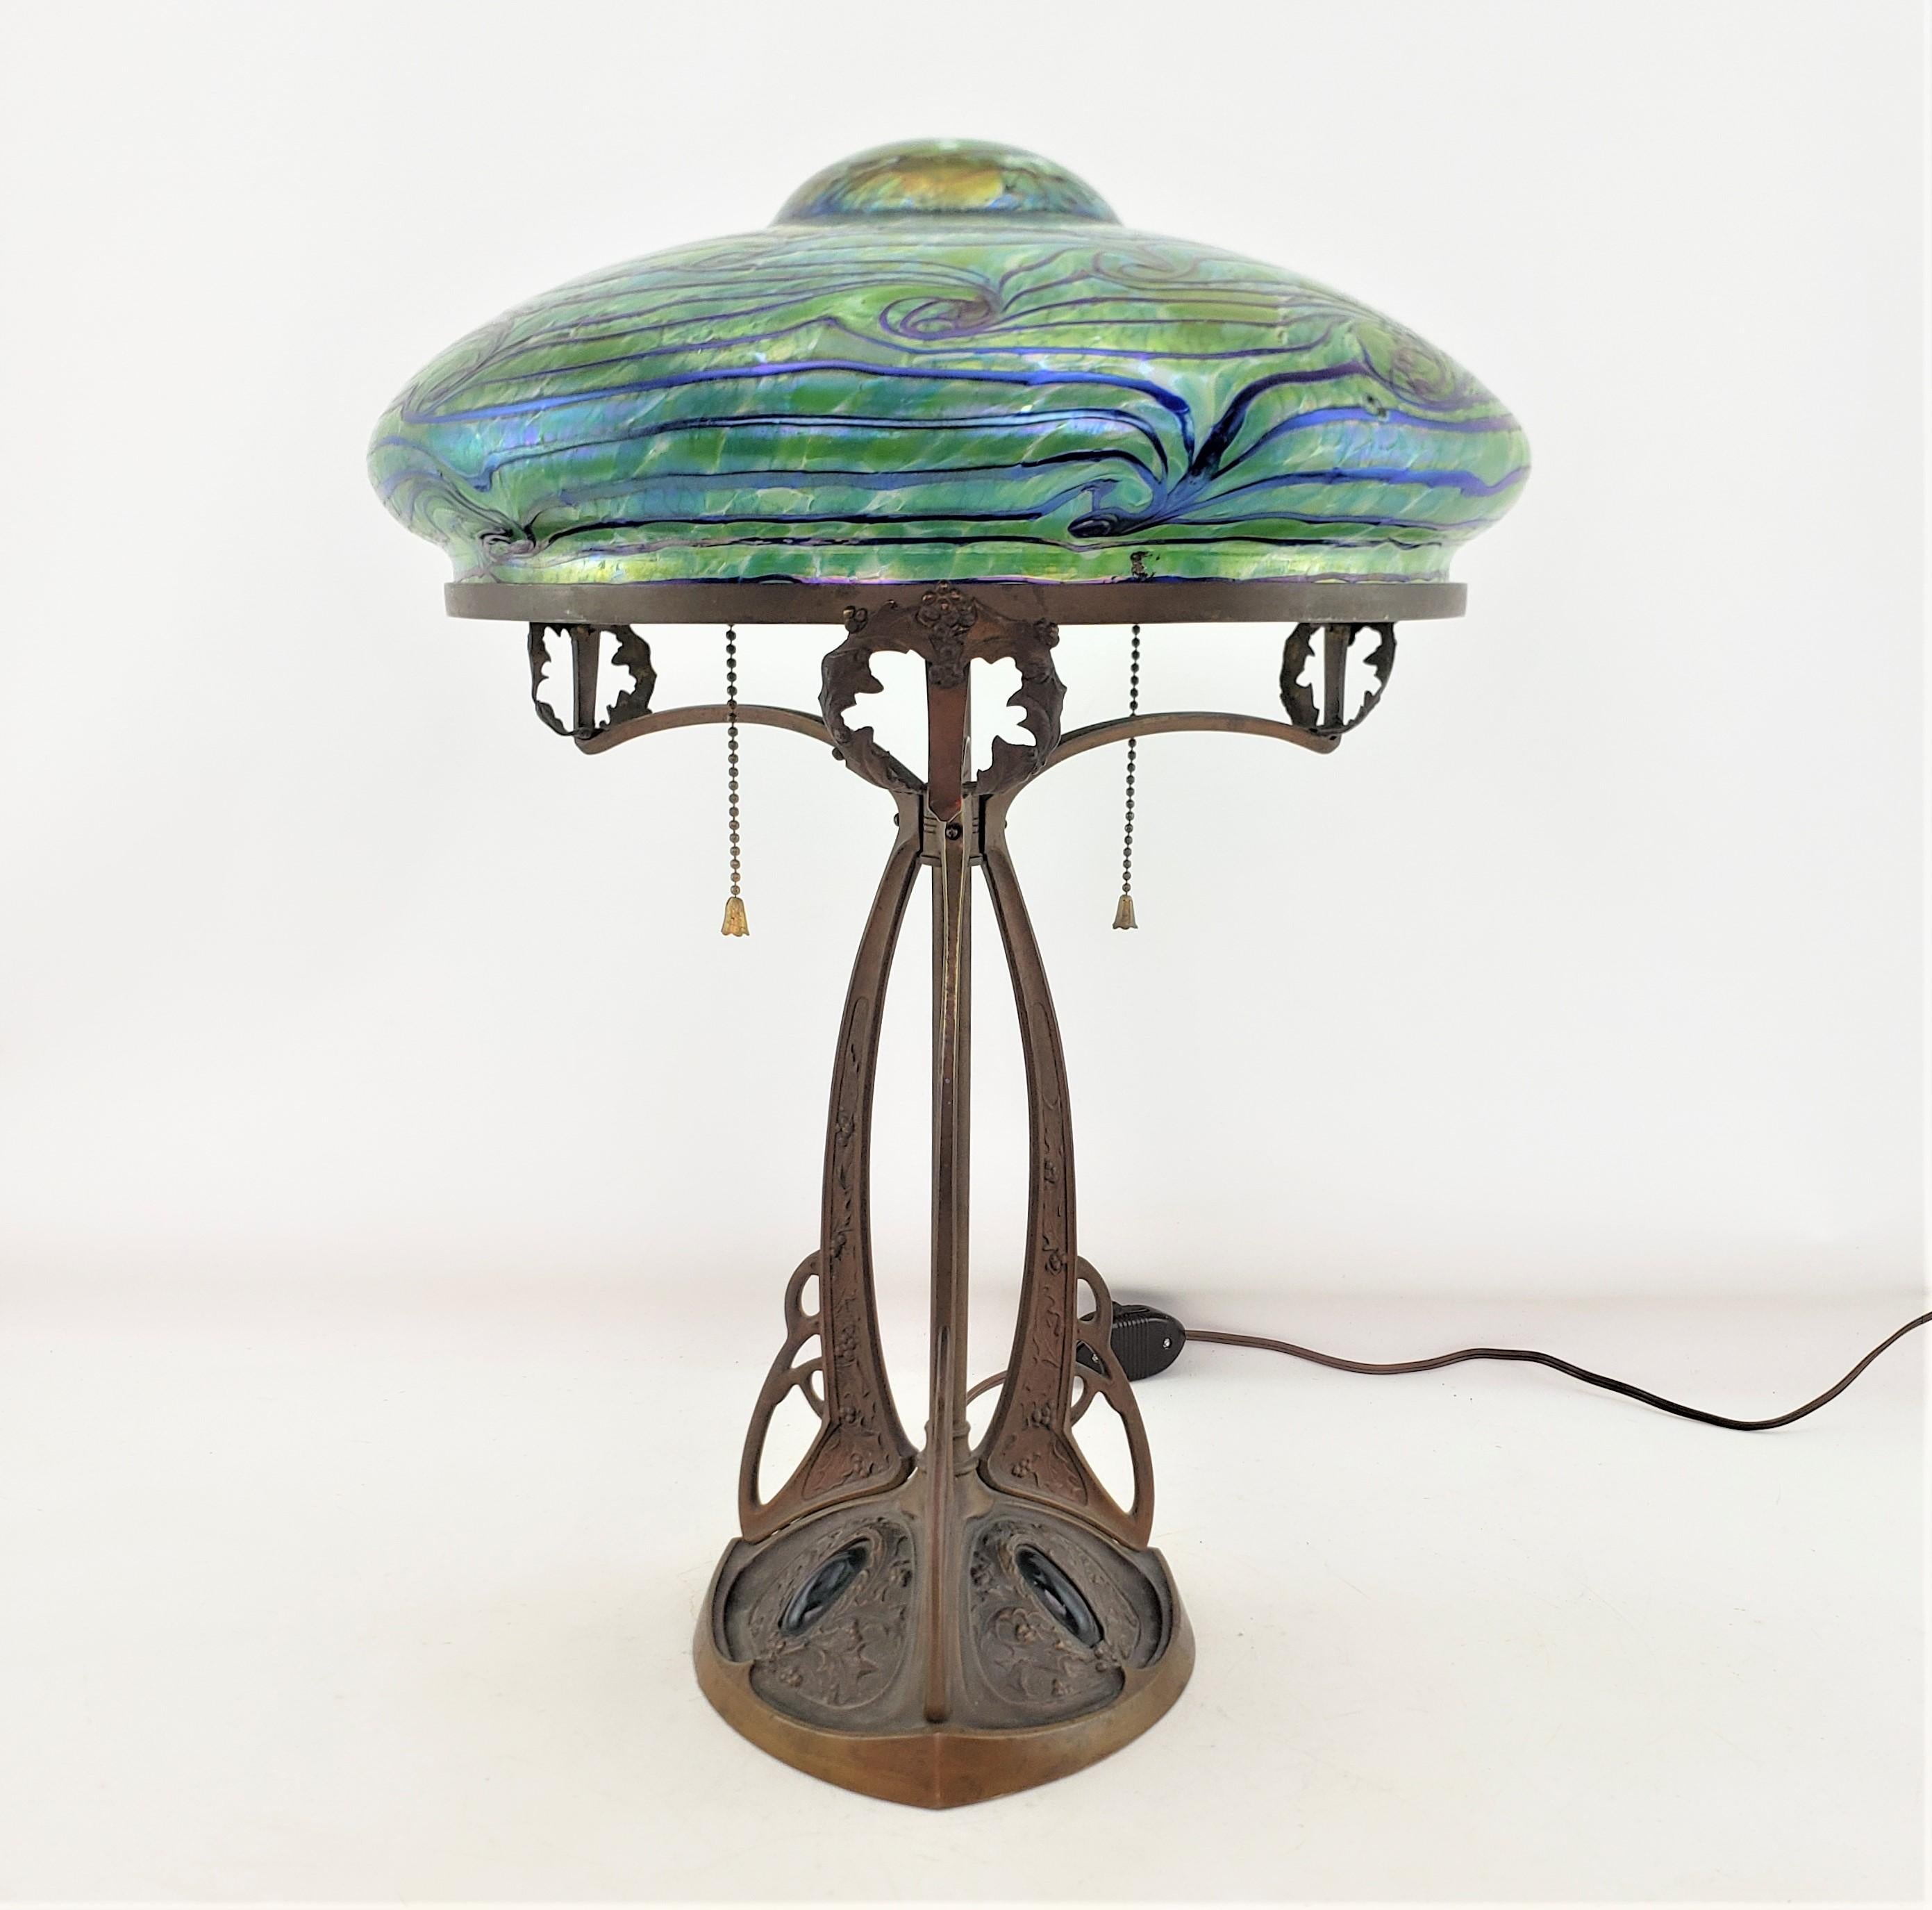 Diese antike Tischlampe ist unsigniert, stammt aber vermutlich aus Österreich und wurde um 1900 im Jugendstil gefertigt. Der Lampensockel besteht aus gegossener und patinierter Bronze mit einem stilisierten dreieckigen Sockel mit floralem Dekor und